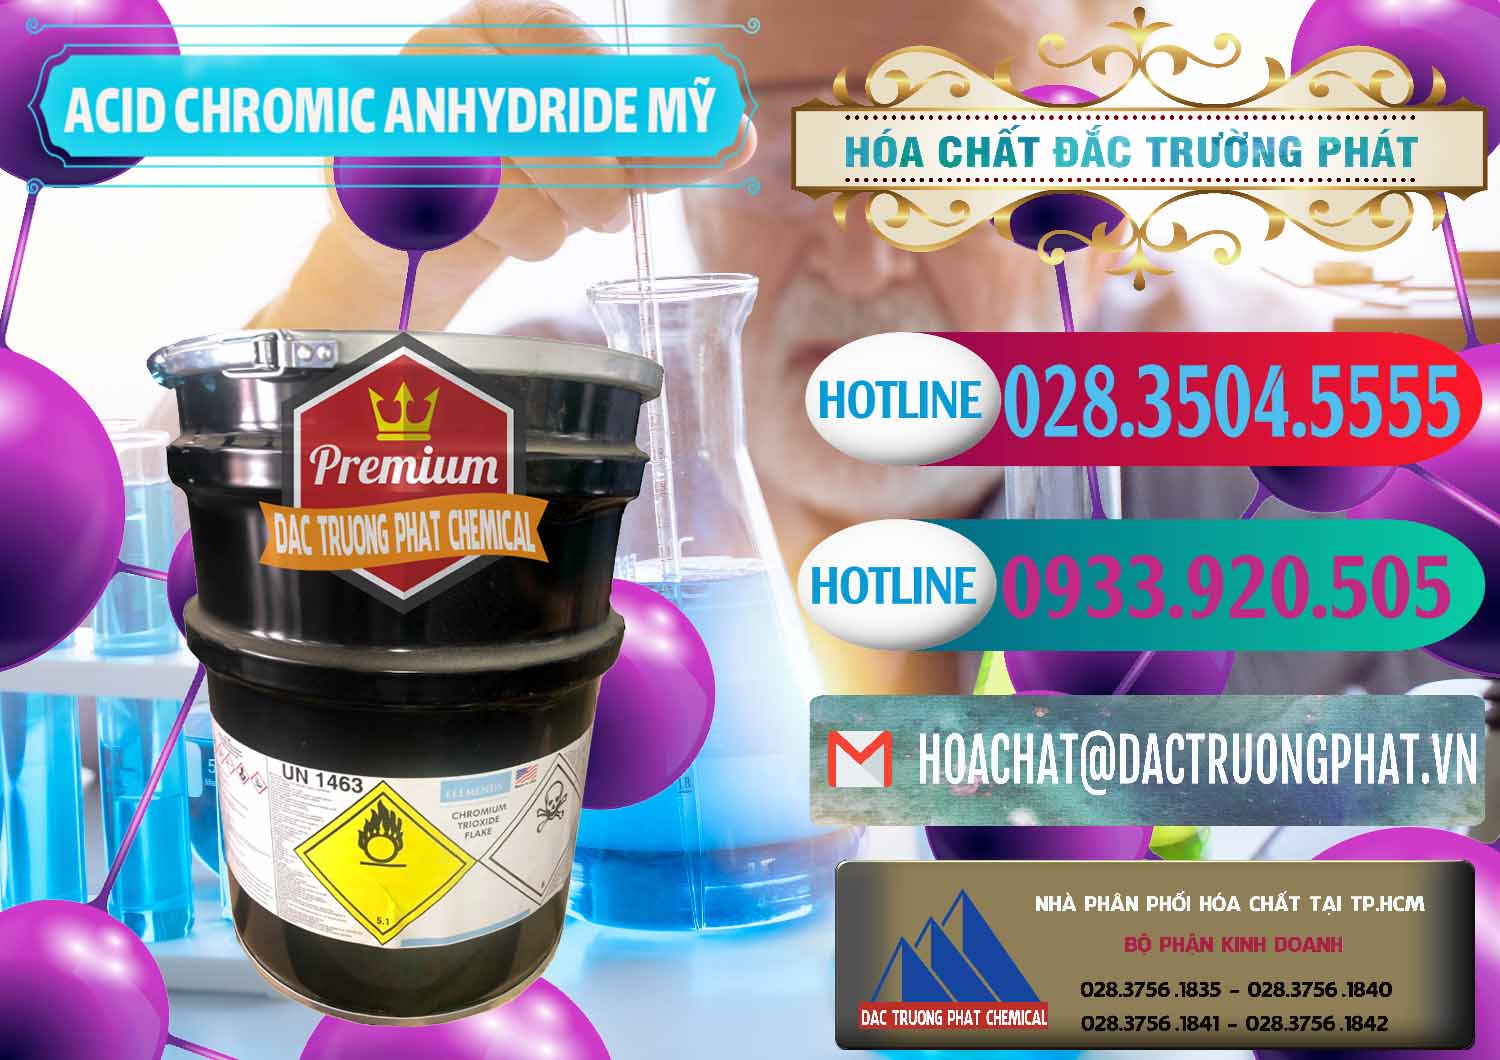 Cty chuyên bán & cung ứng Acid Chromic Anhydride - Cromic CRO3 USA Mỹ - 0364 - Công ty cung cấp _ kinh doanh hóa chất tại TP.HCM - truongphat.vn